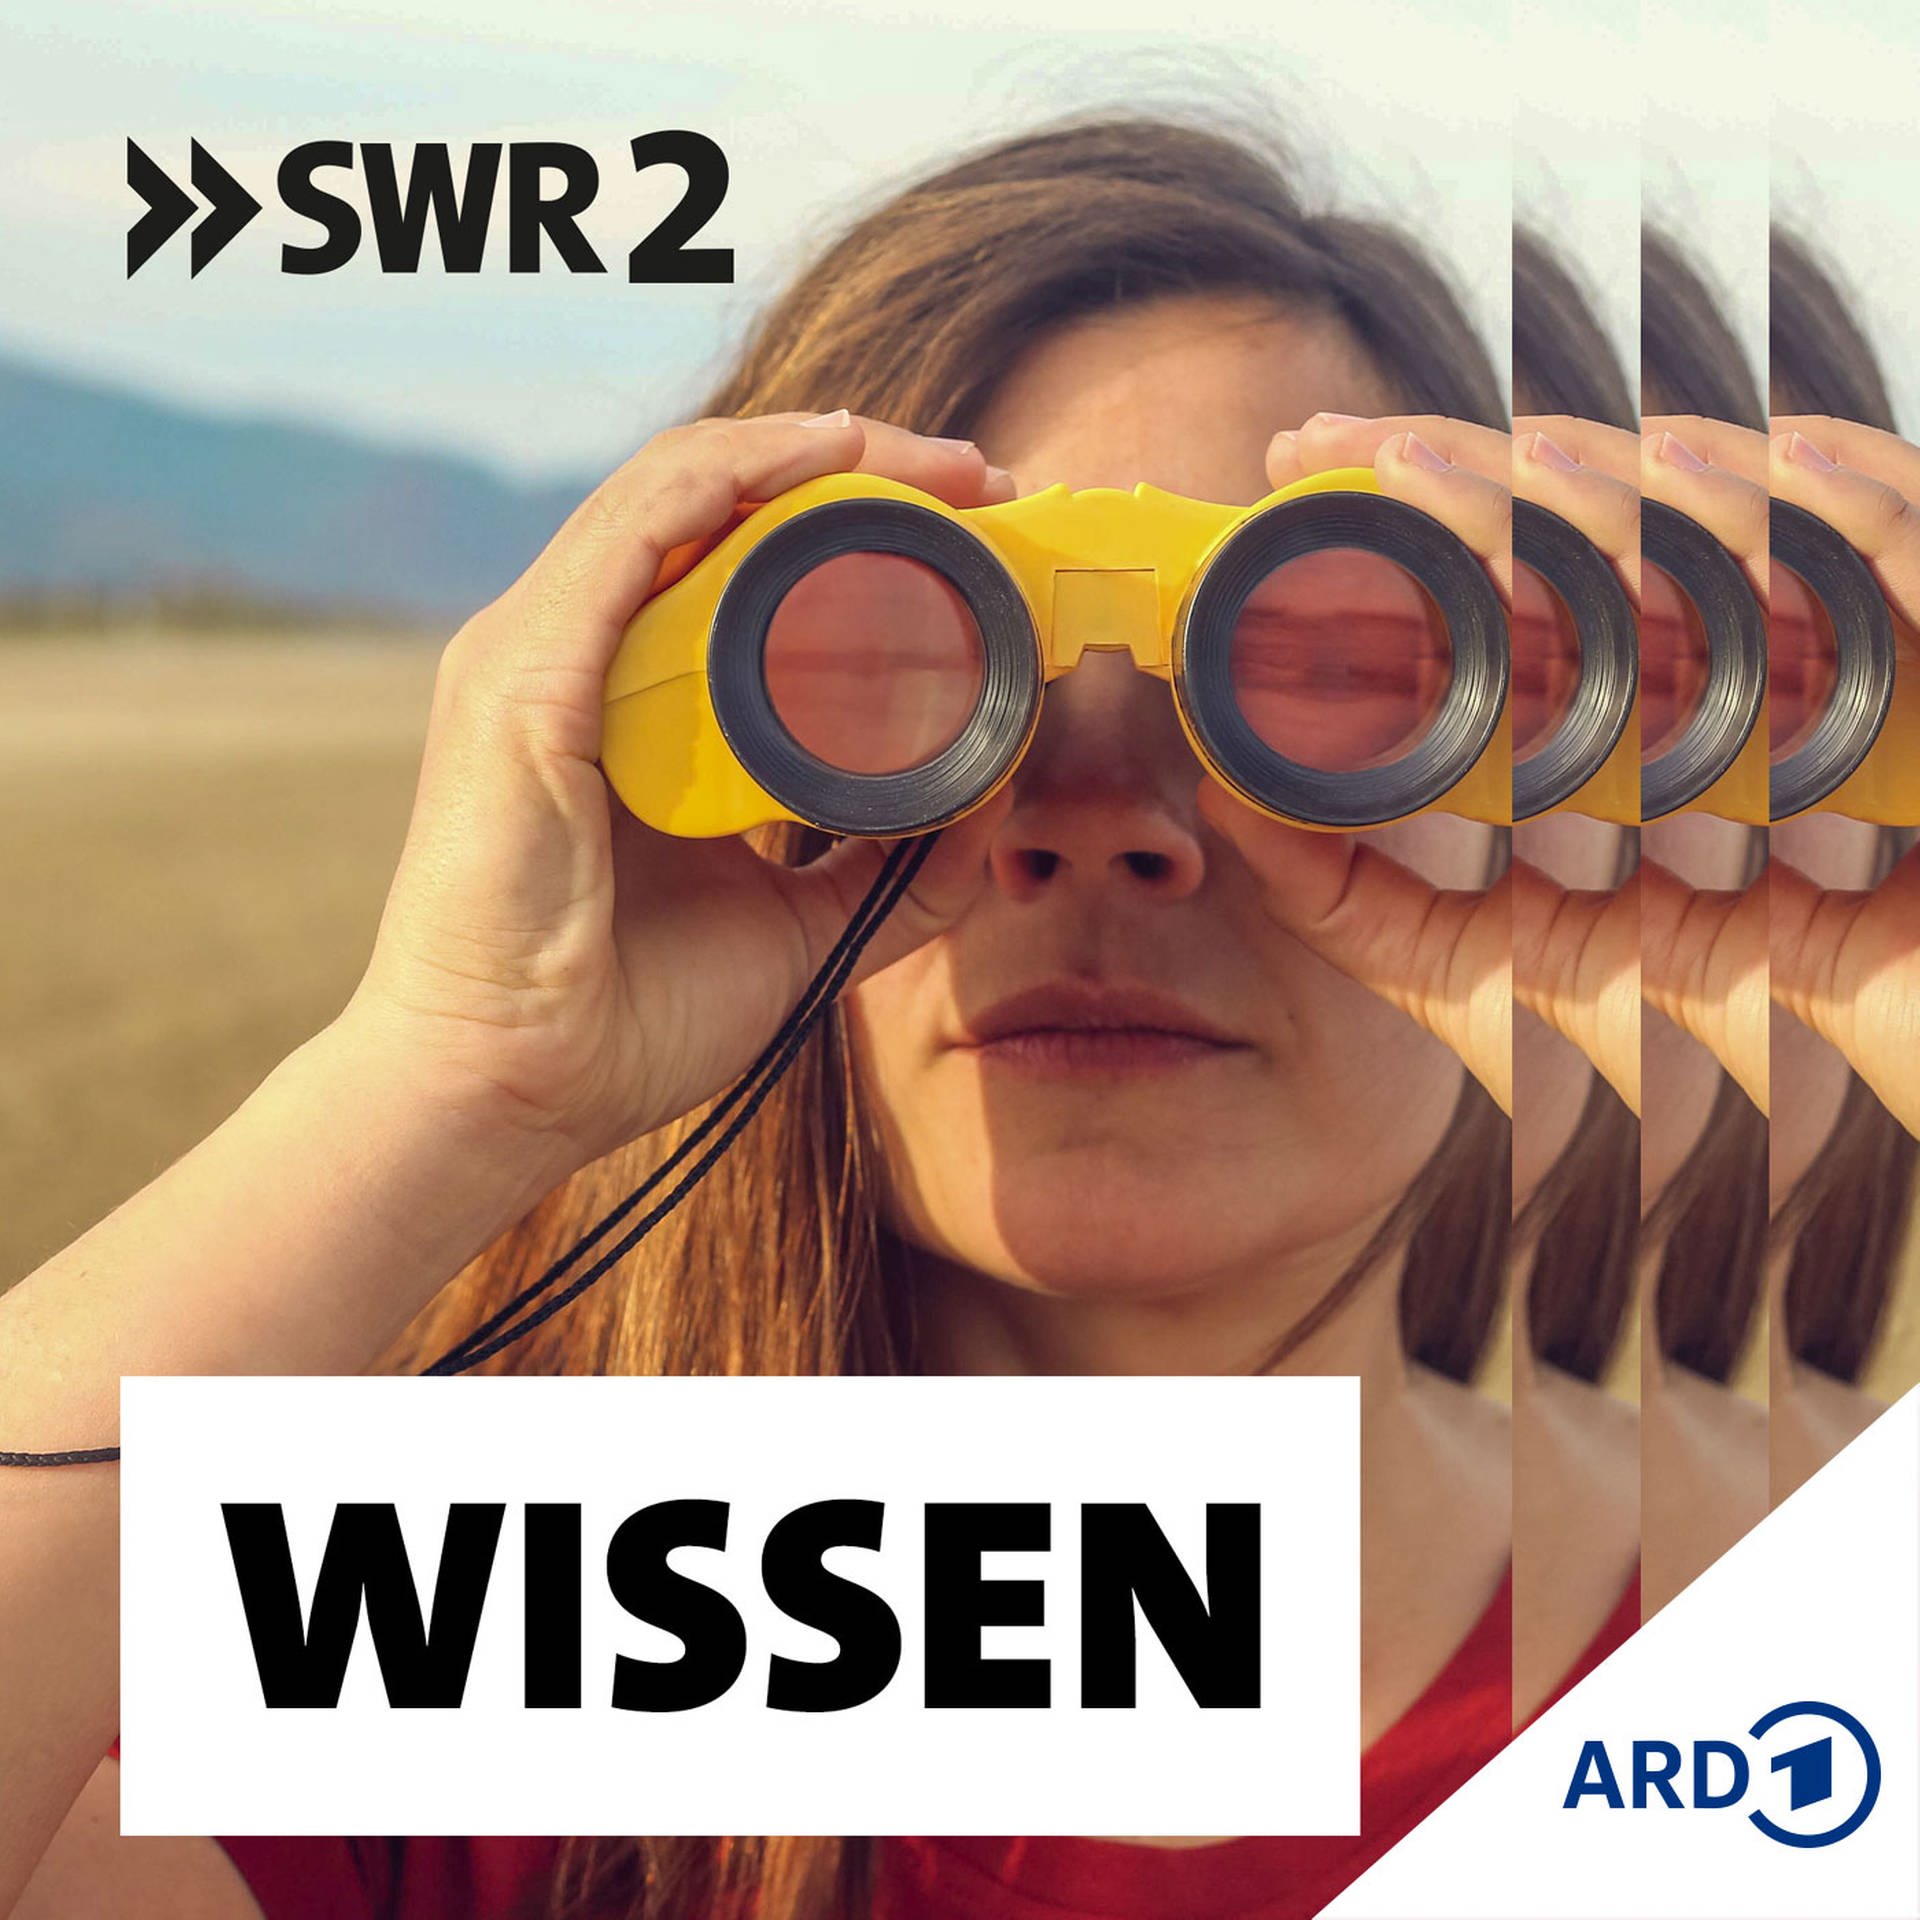 SWR2 Wissen:SWR